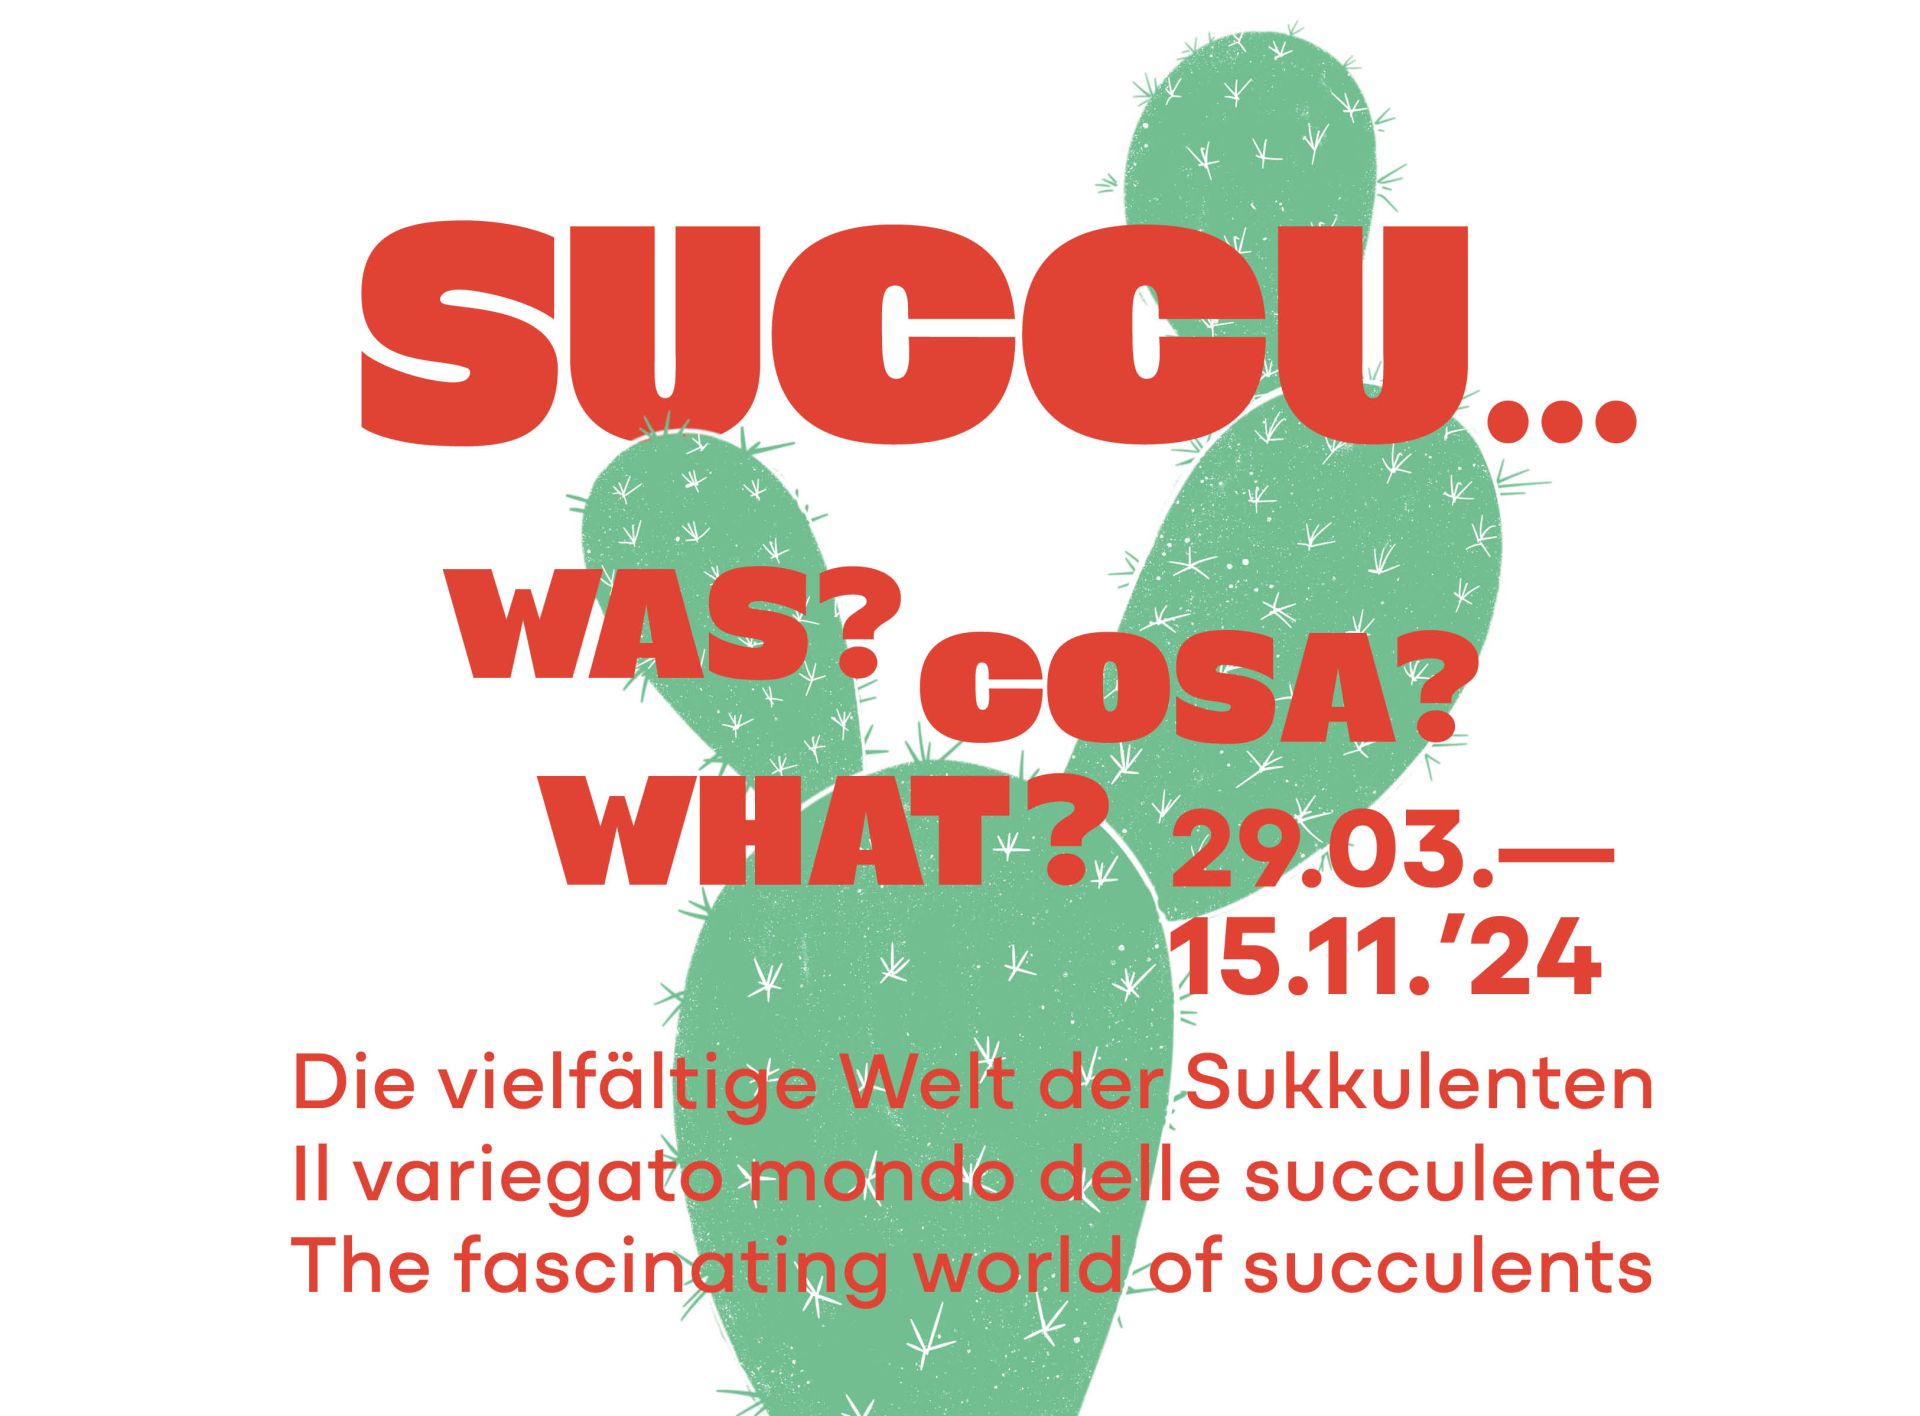 Succu... what?